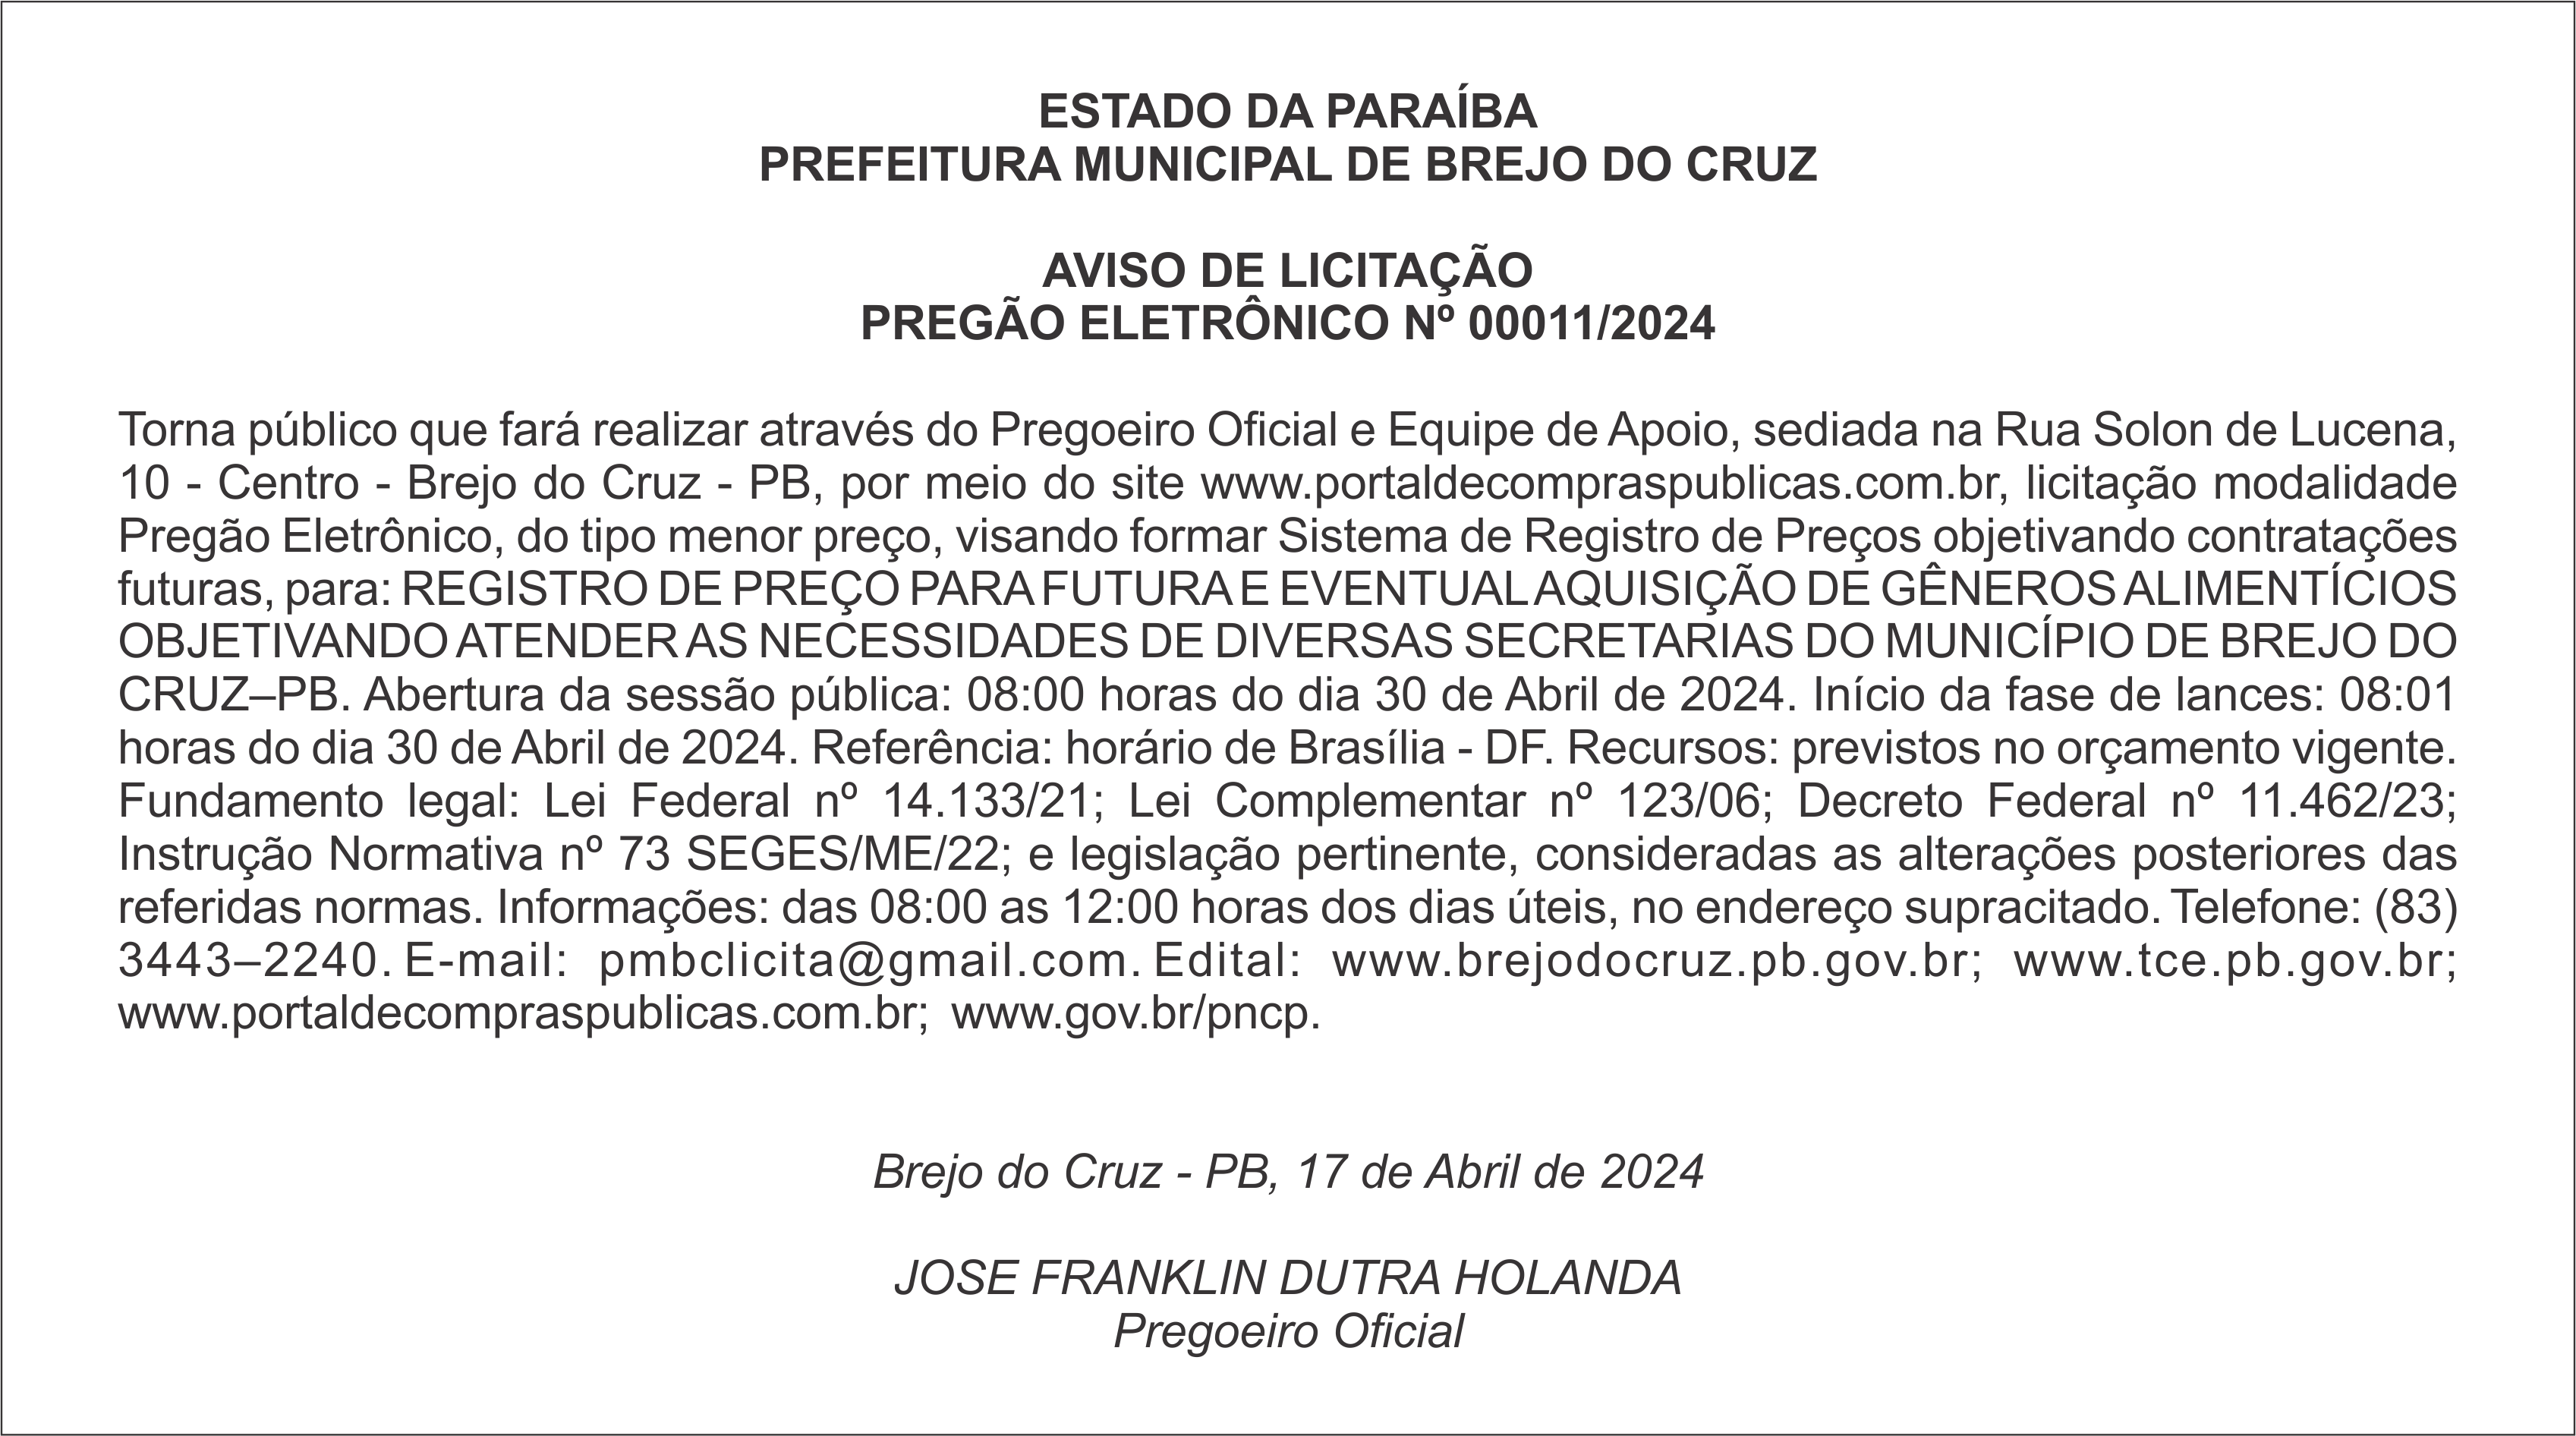 PREFEITURA MUNICIPAL DE BREJO DO CRUZ – AVISO DE LICITAÇÃO – PREGÃO ELETRÔNICO Nº 00011/2024